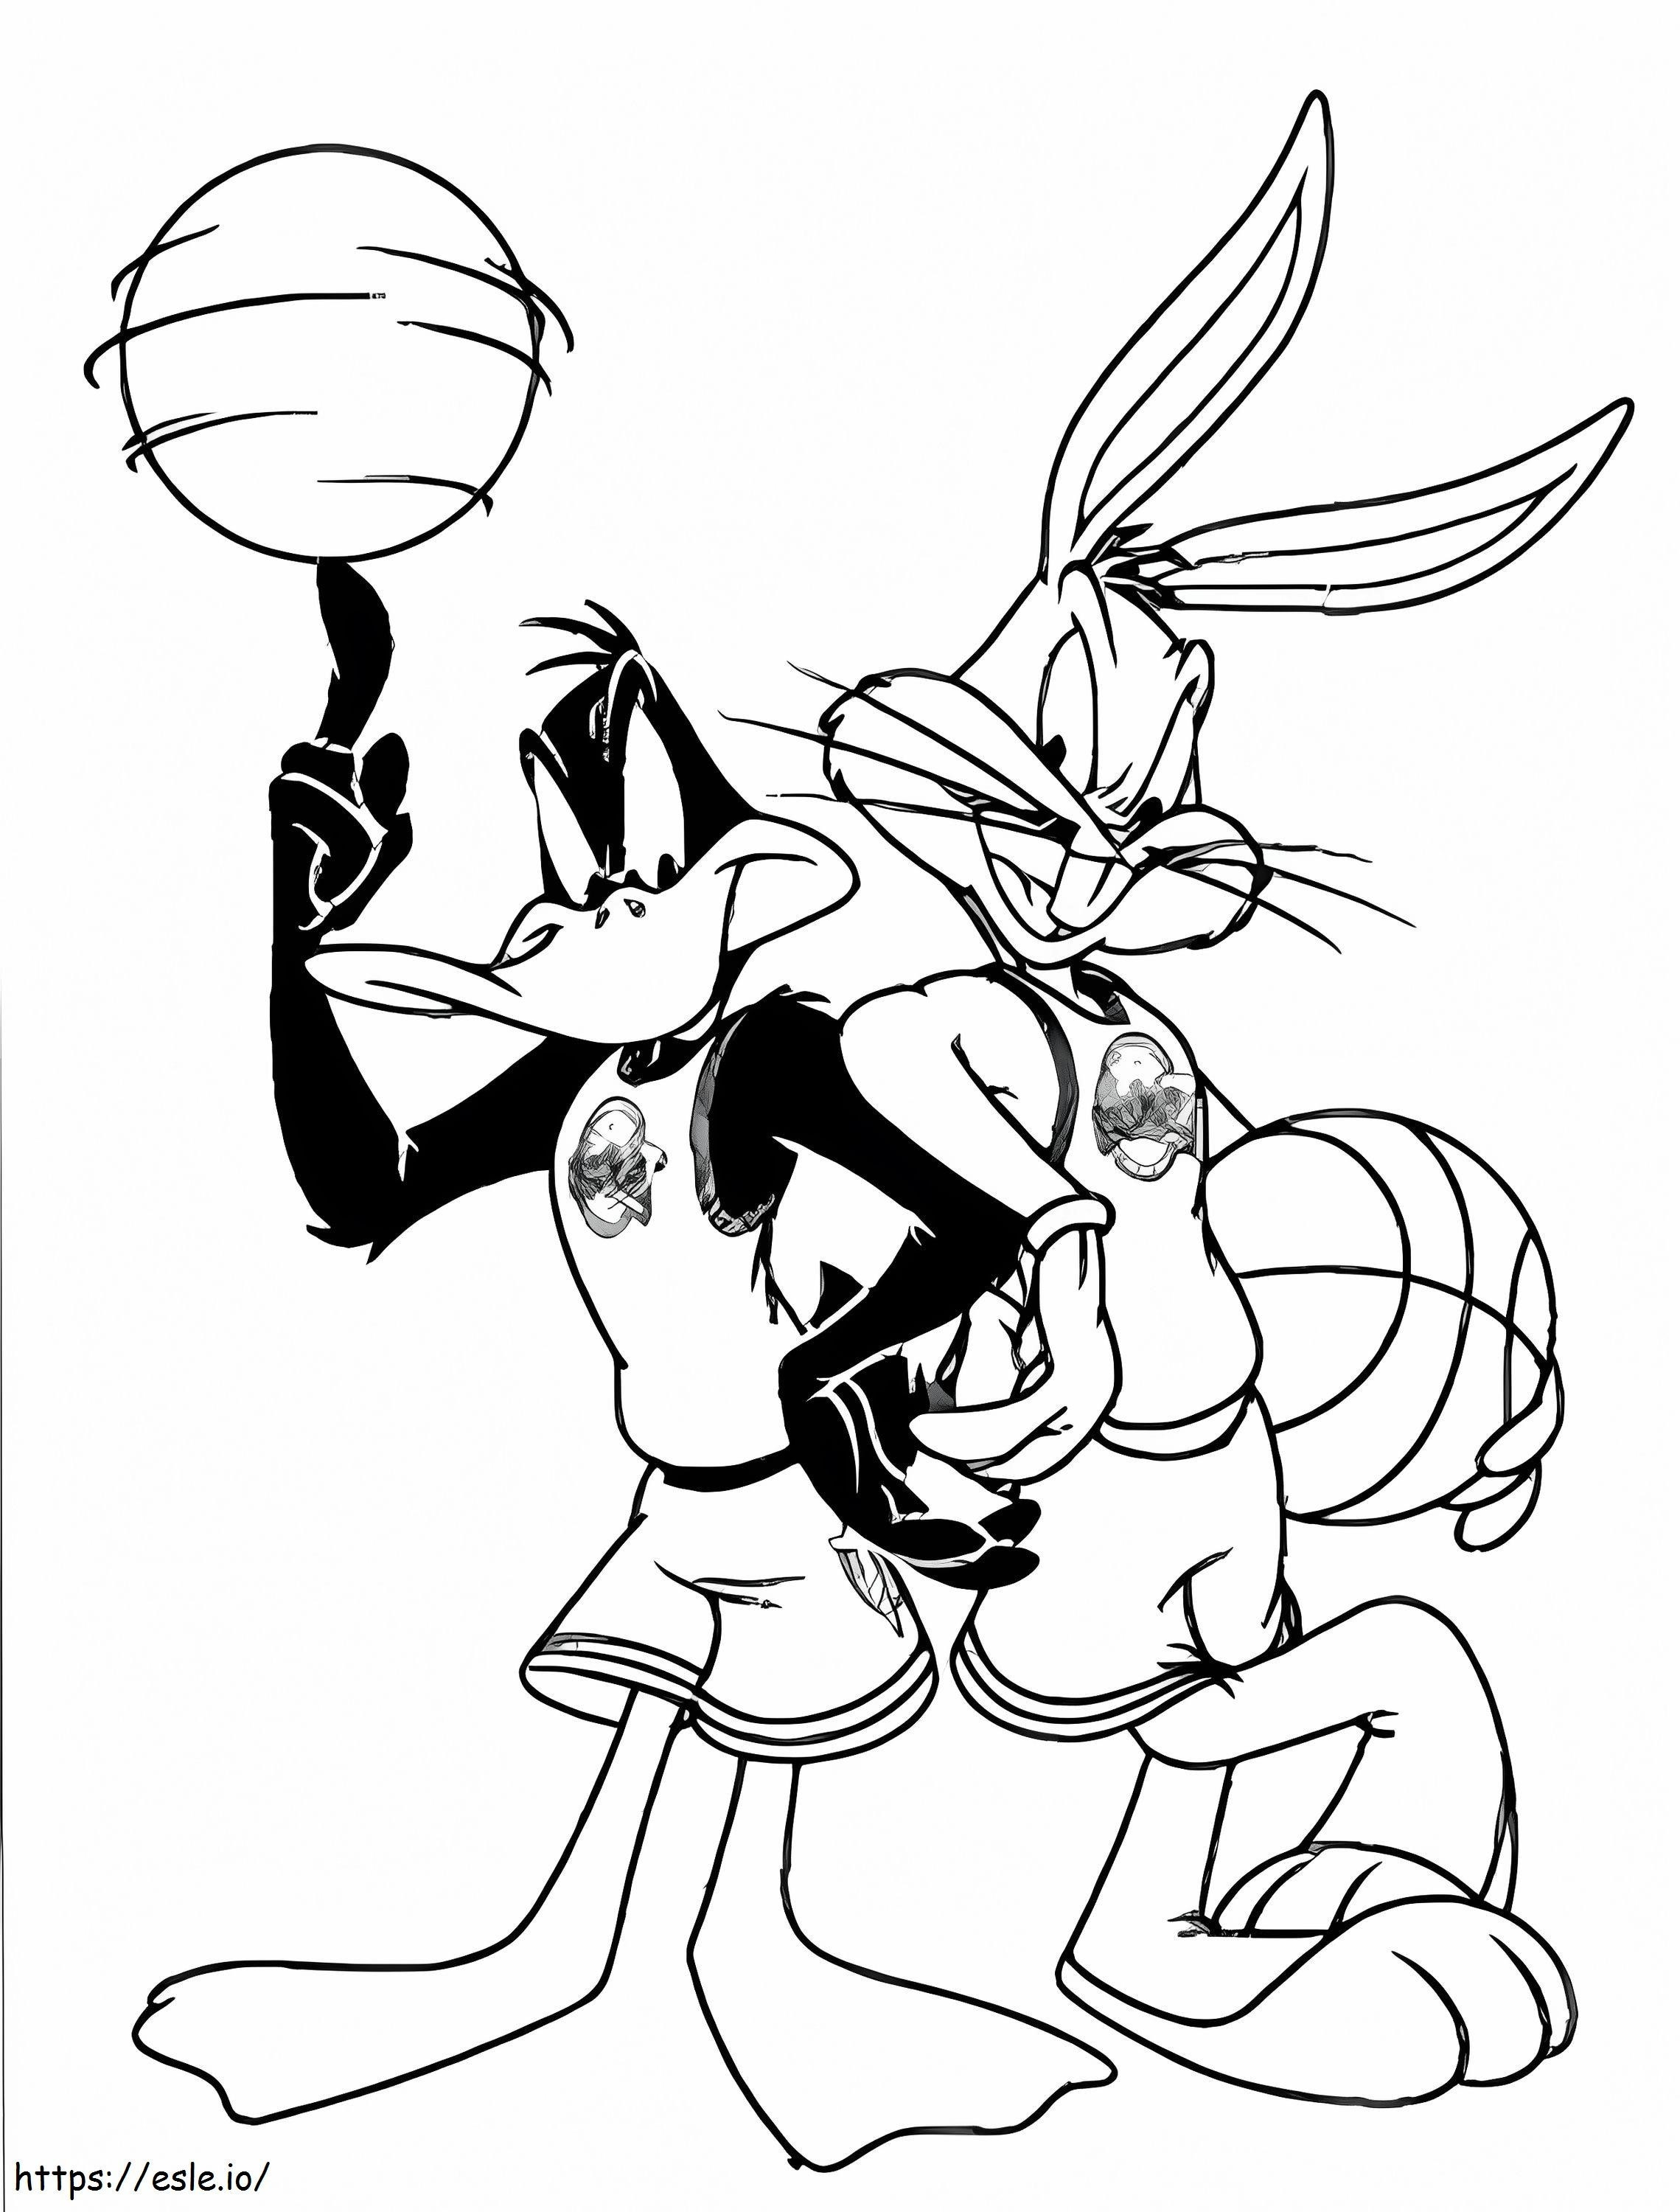 Bugs Bunny ve Daffy Duck Topları Tutuyor boyama